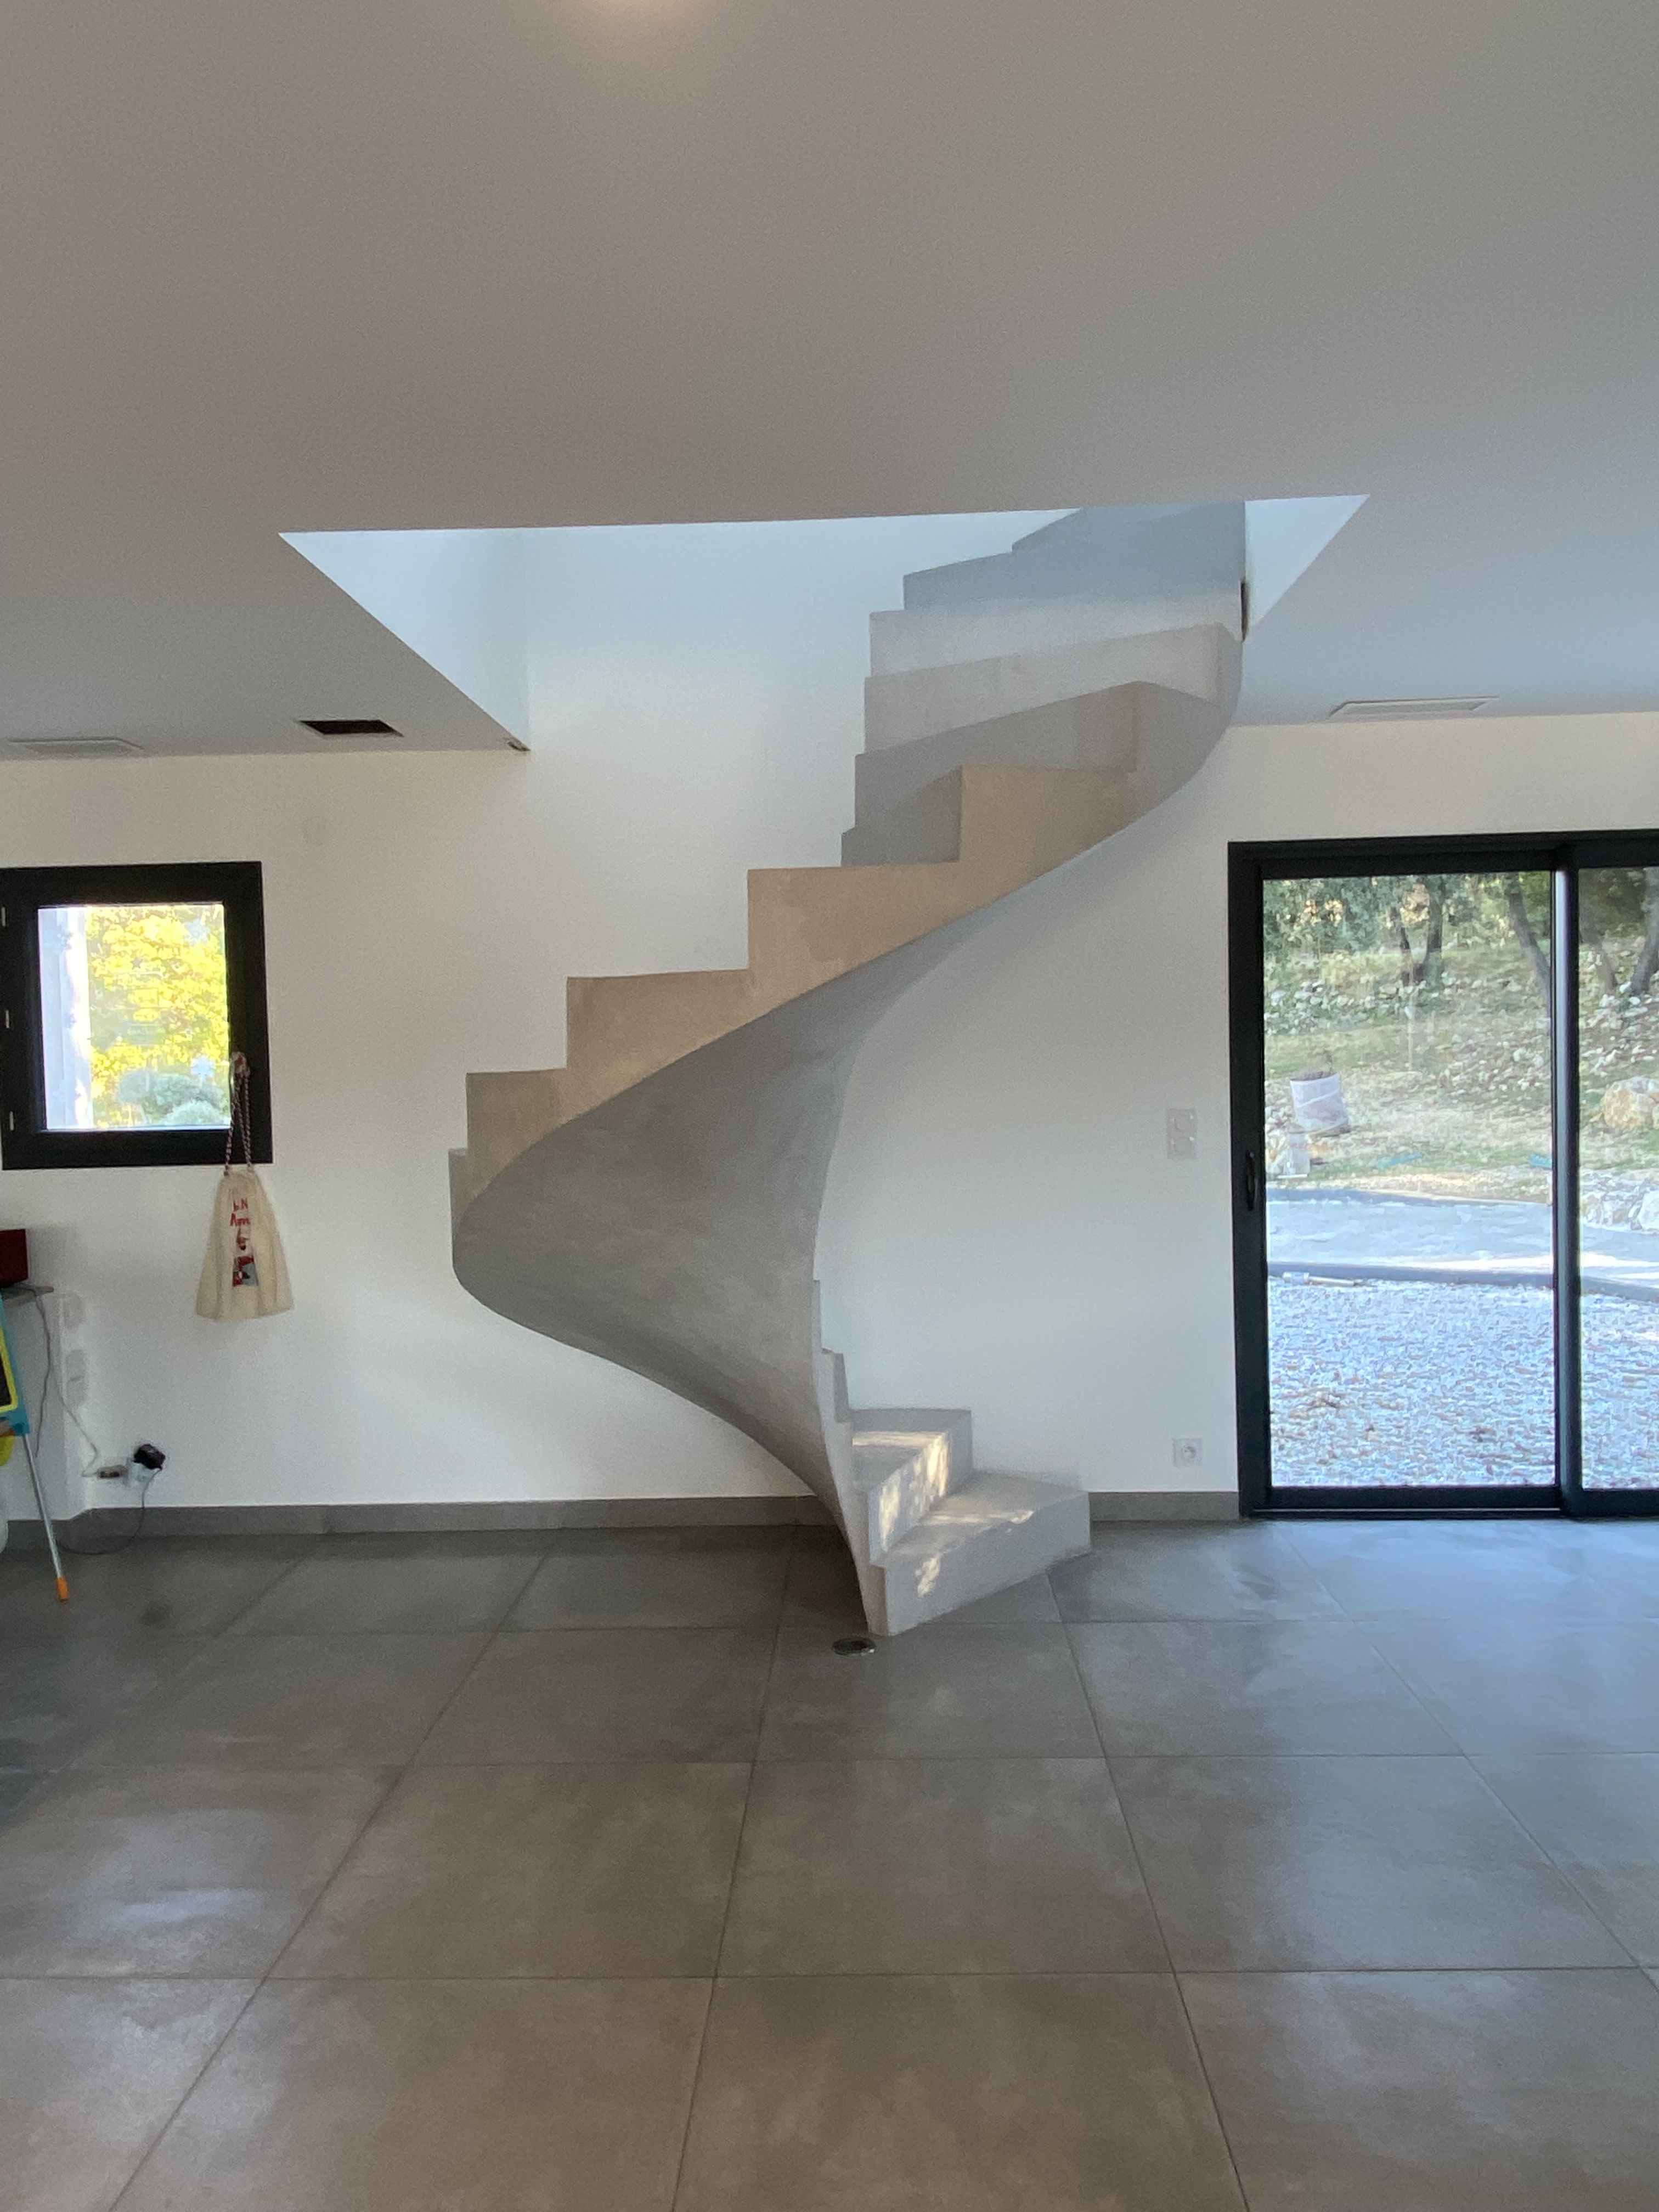 Escalier hélicoïdal dans une maison fini, dont la couleur du béton ciré est en zinc, réalisé par Jean De Pastors.